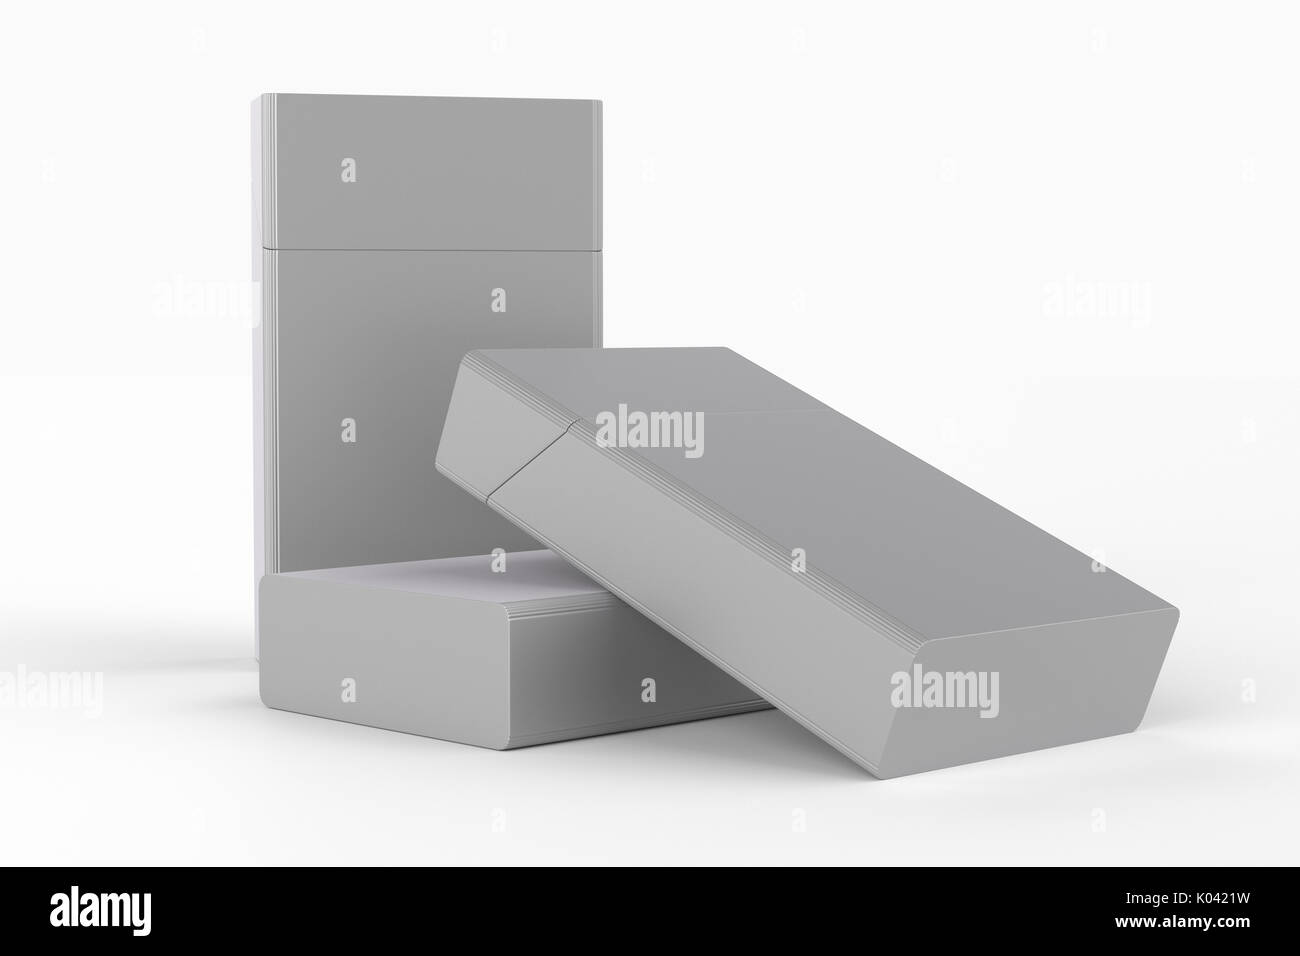 3D Render composición de tres cajas de cigarrillos redondeado de tamaño king size o paquetes sobre un fondo blanco con sombra. Trazado de recorte. Plantilla para su diseño. Foto de stock